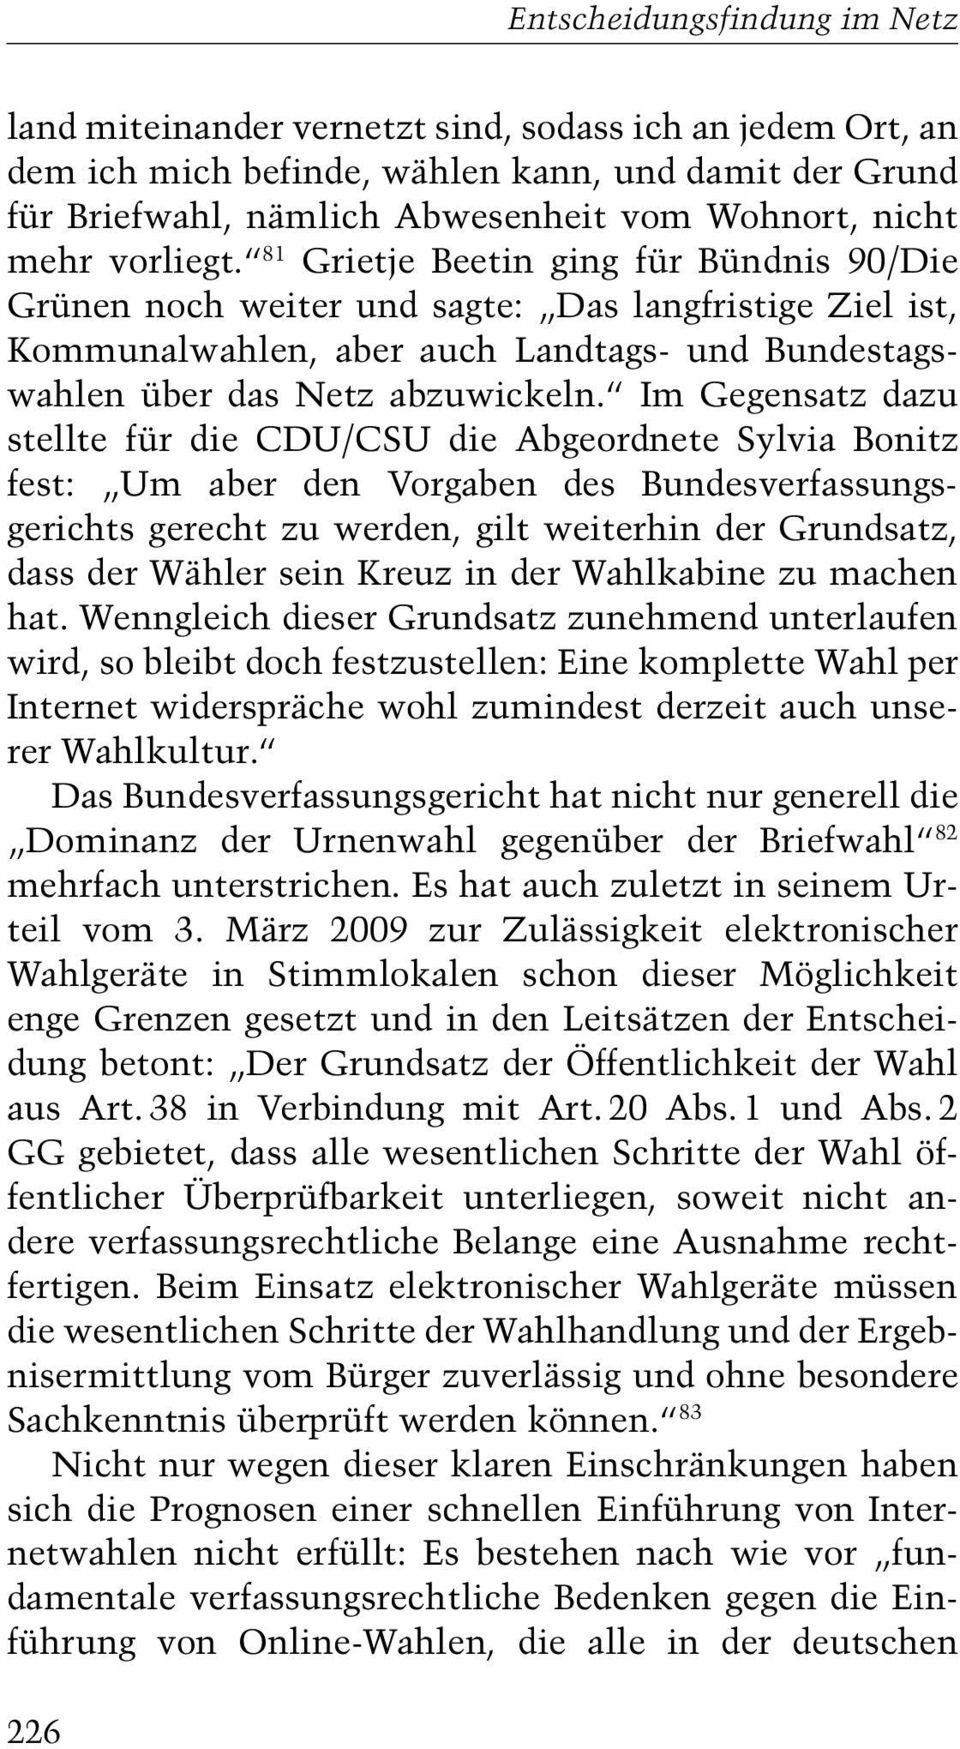 Im Gegensatz dazu stellte für die CDU/CSU die Abgeordnete Sylvia Bonitz fest: Um aber den Vorgaben des Bundesverfassungsgerichts gerecht zu werden, gilt weiterhin der Grundsatz, dass der Wähler sein